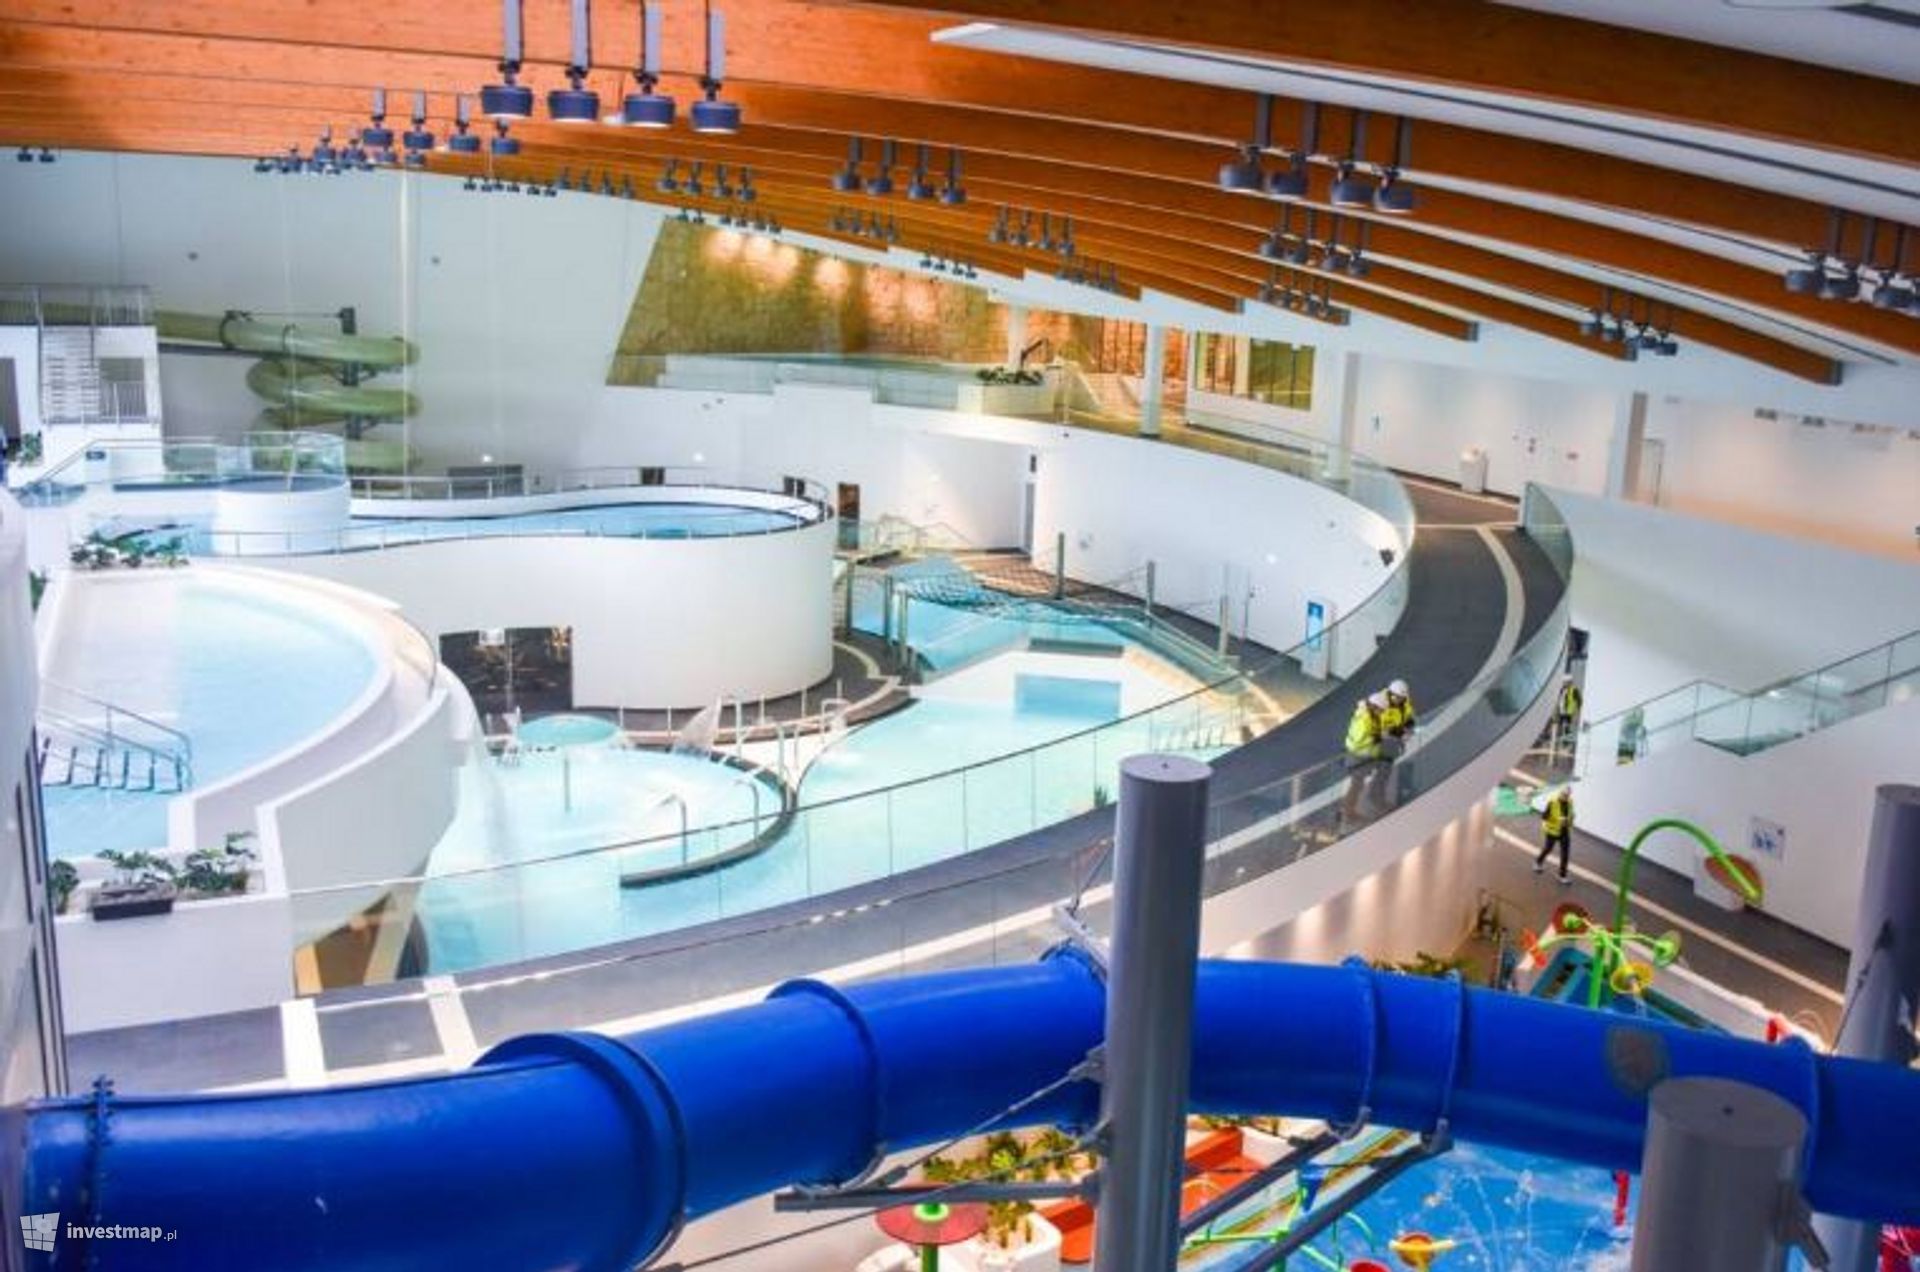 Fabryka Wody w Szczecinie, najnowocześniejszy kompleks basenowo-edukacyjny w Polsce jest gotowa 